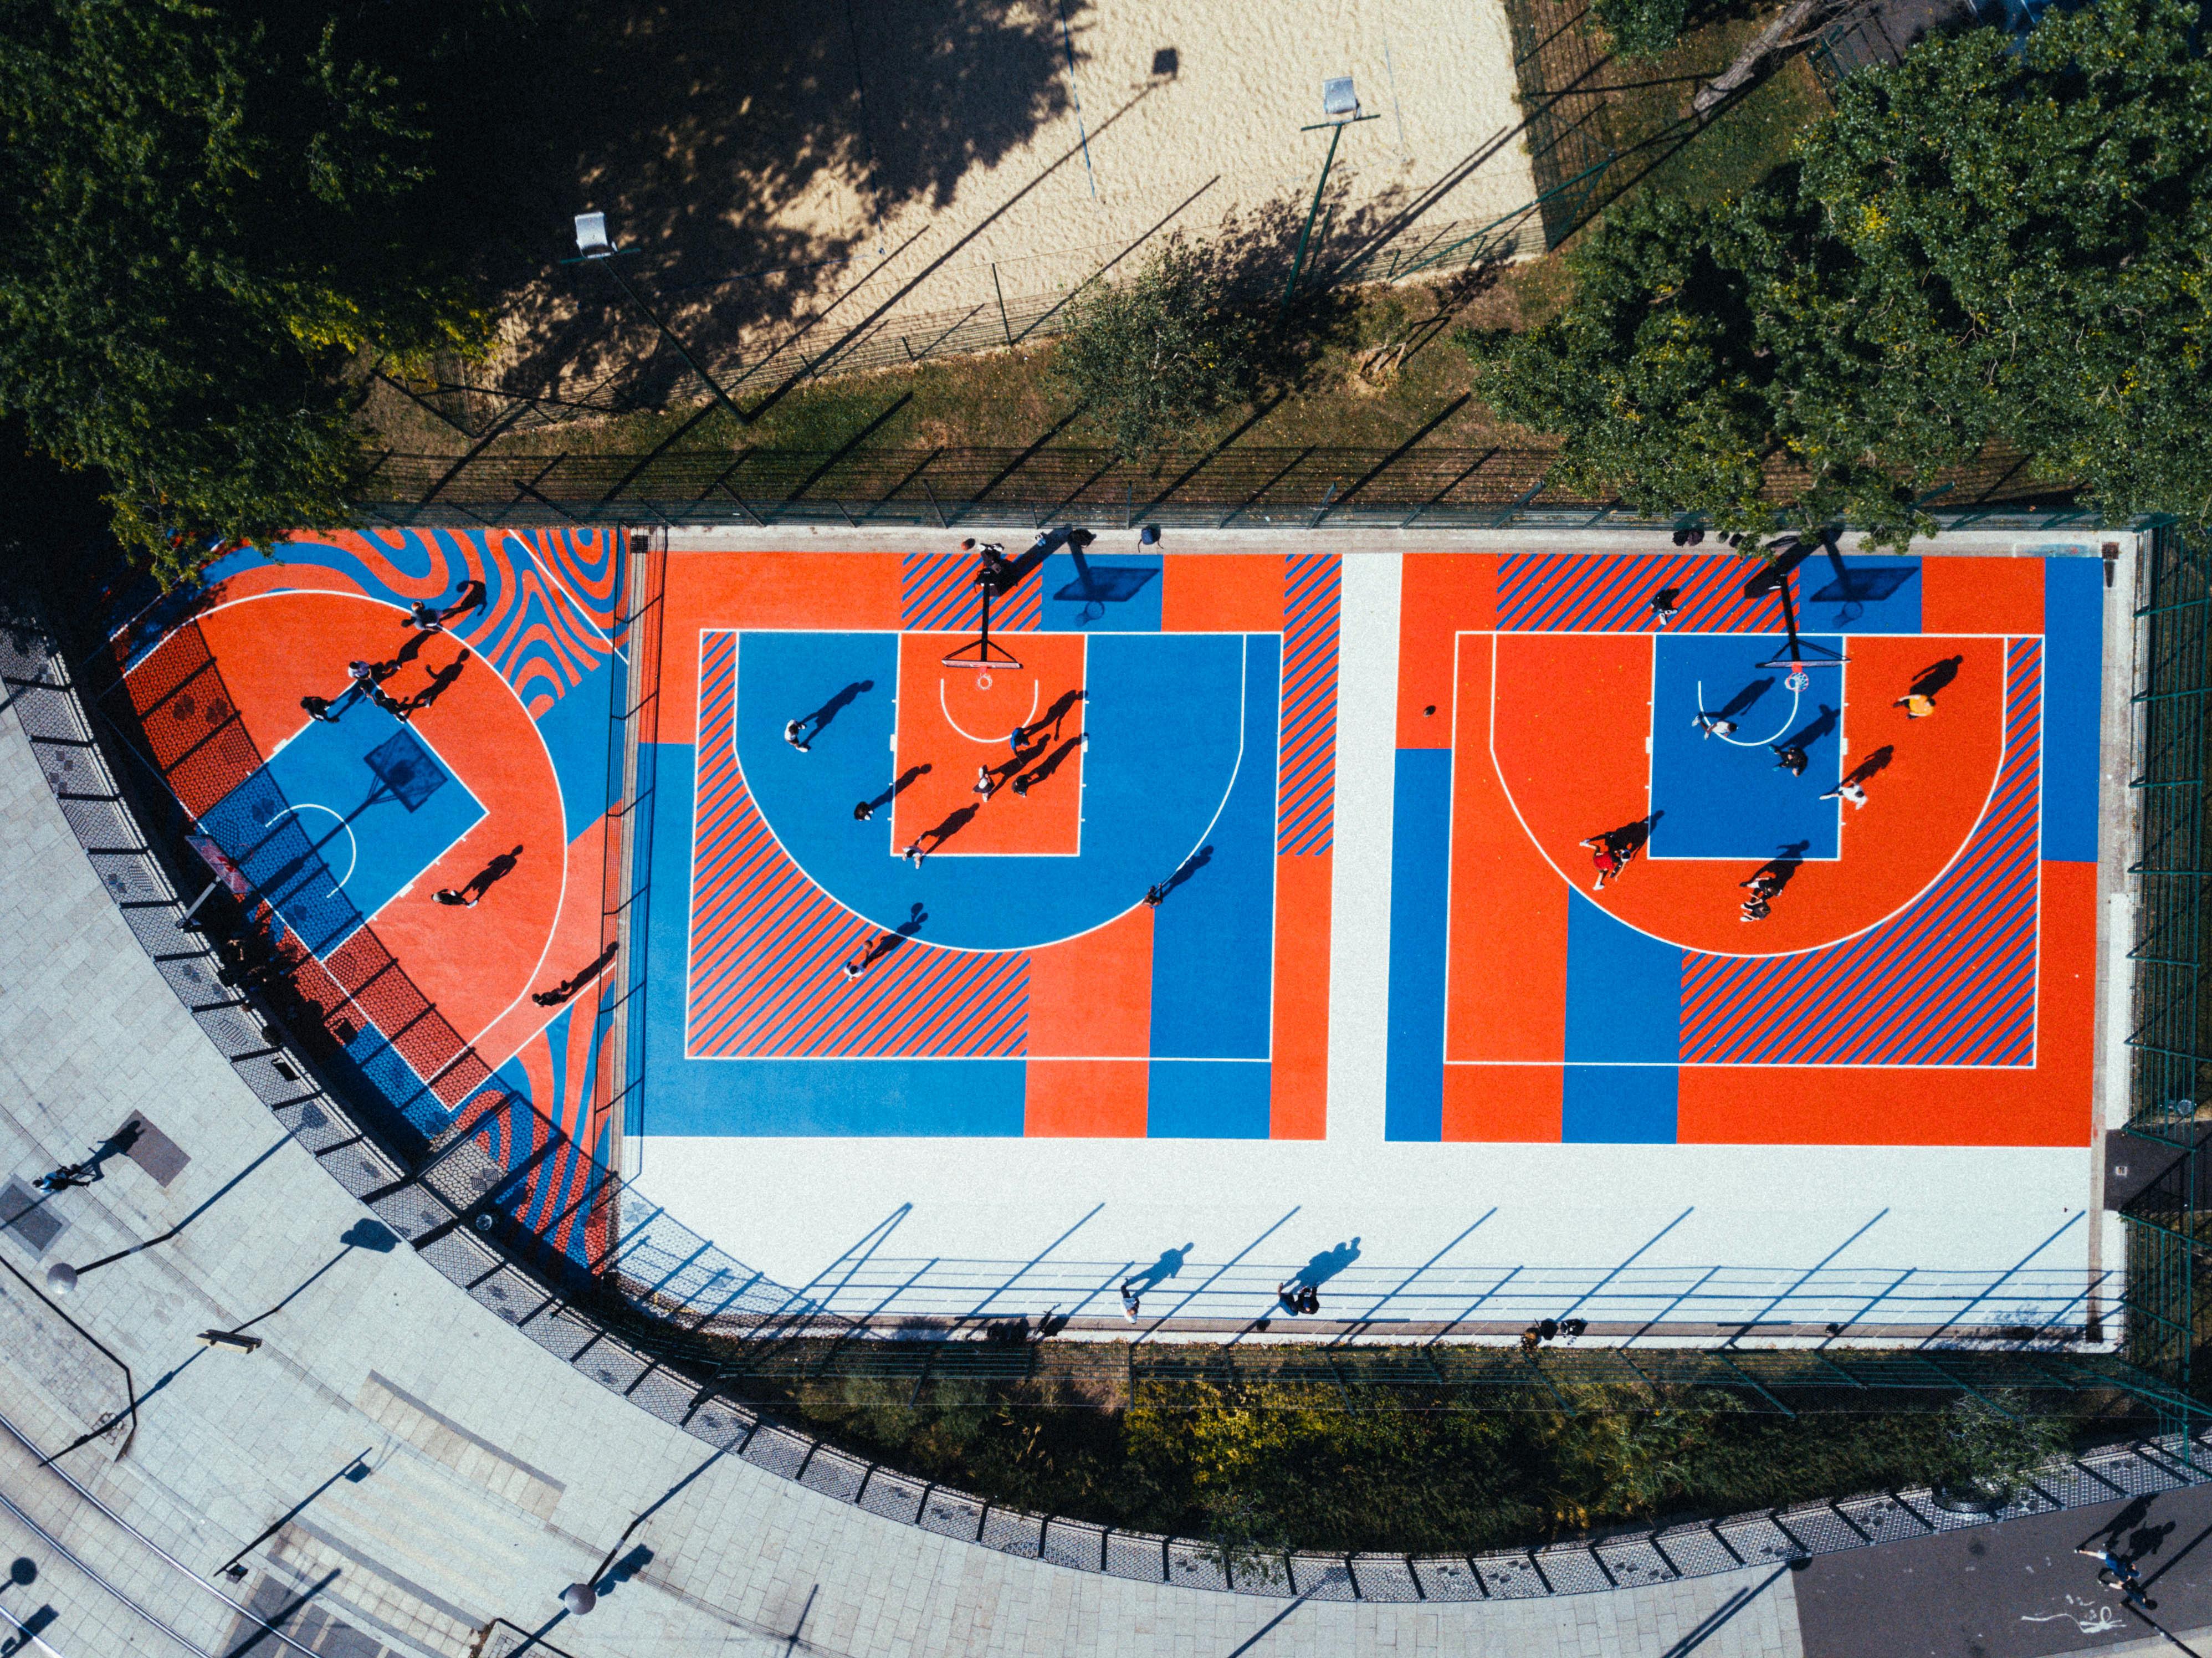 Terrain de basket Ladoumegue, designé par Dararith Pach 